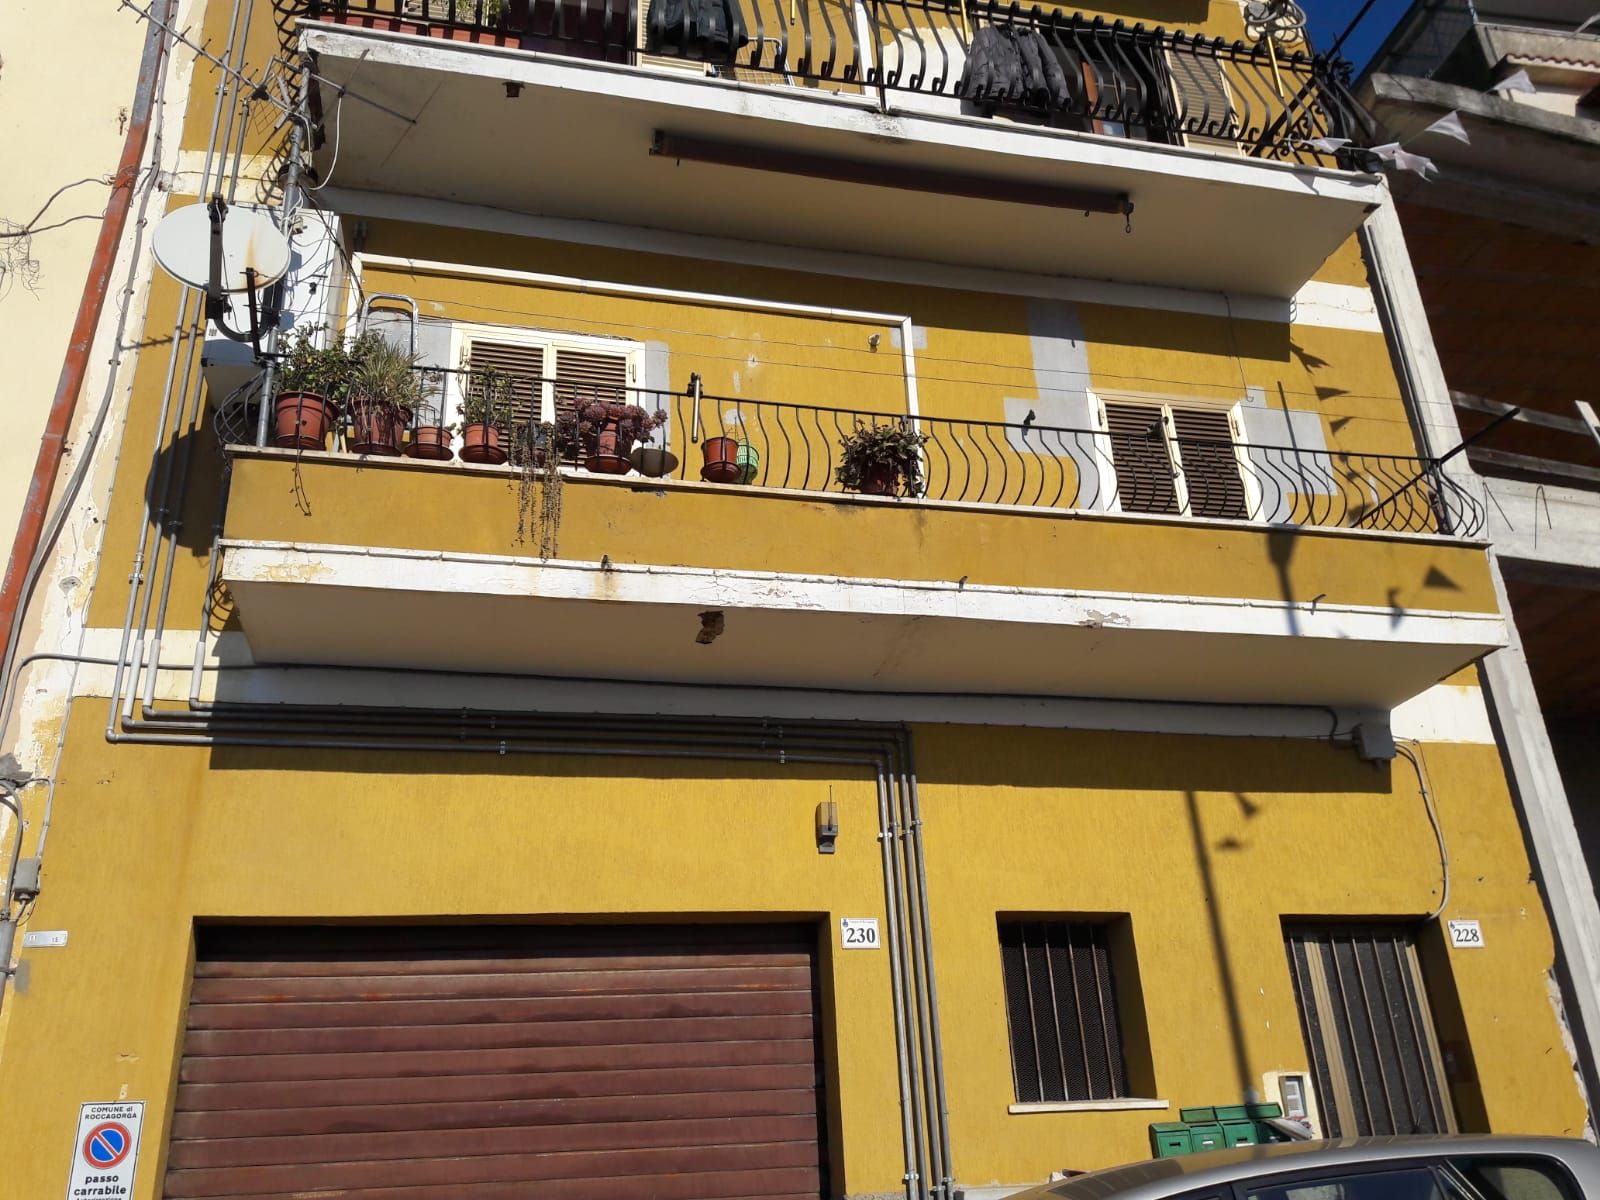 Appartamento in vendita a Roccagorga, 3 locali, prezzo € 45.000 | CambioCasa.it